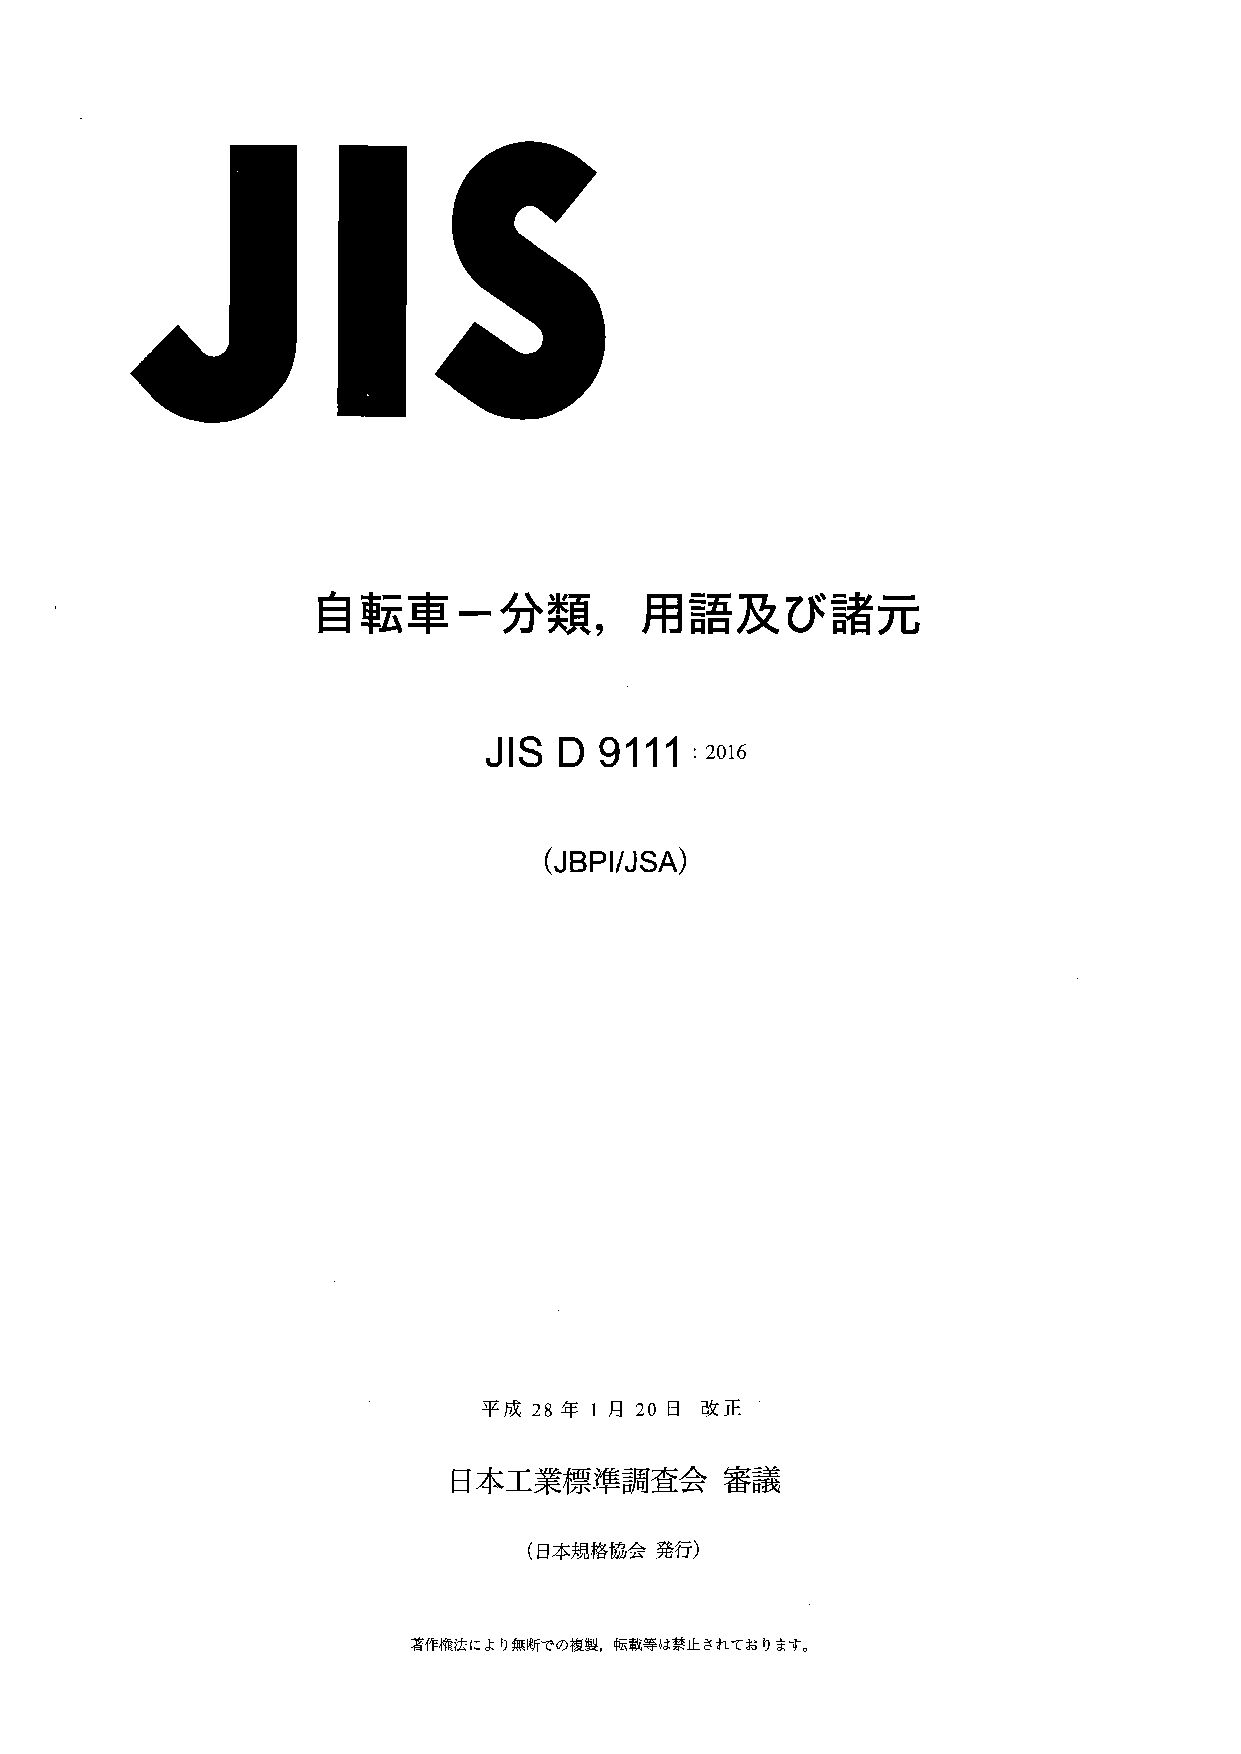 JIS D 9111:2016封面图